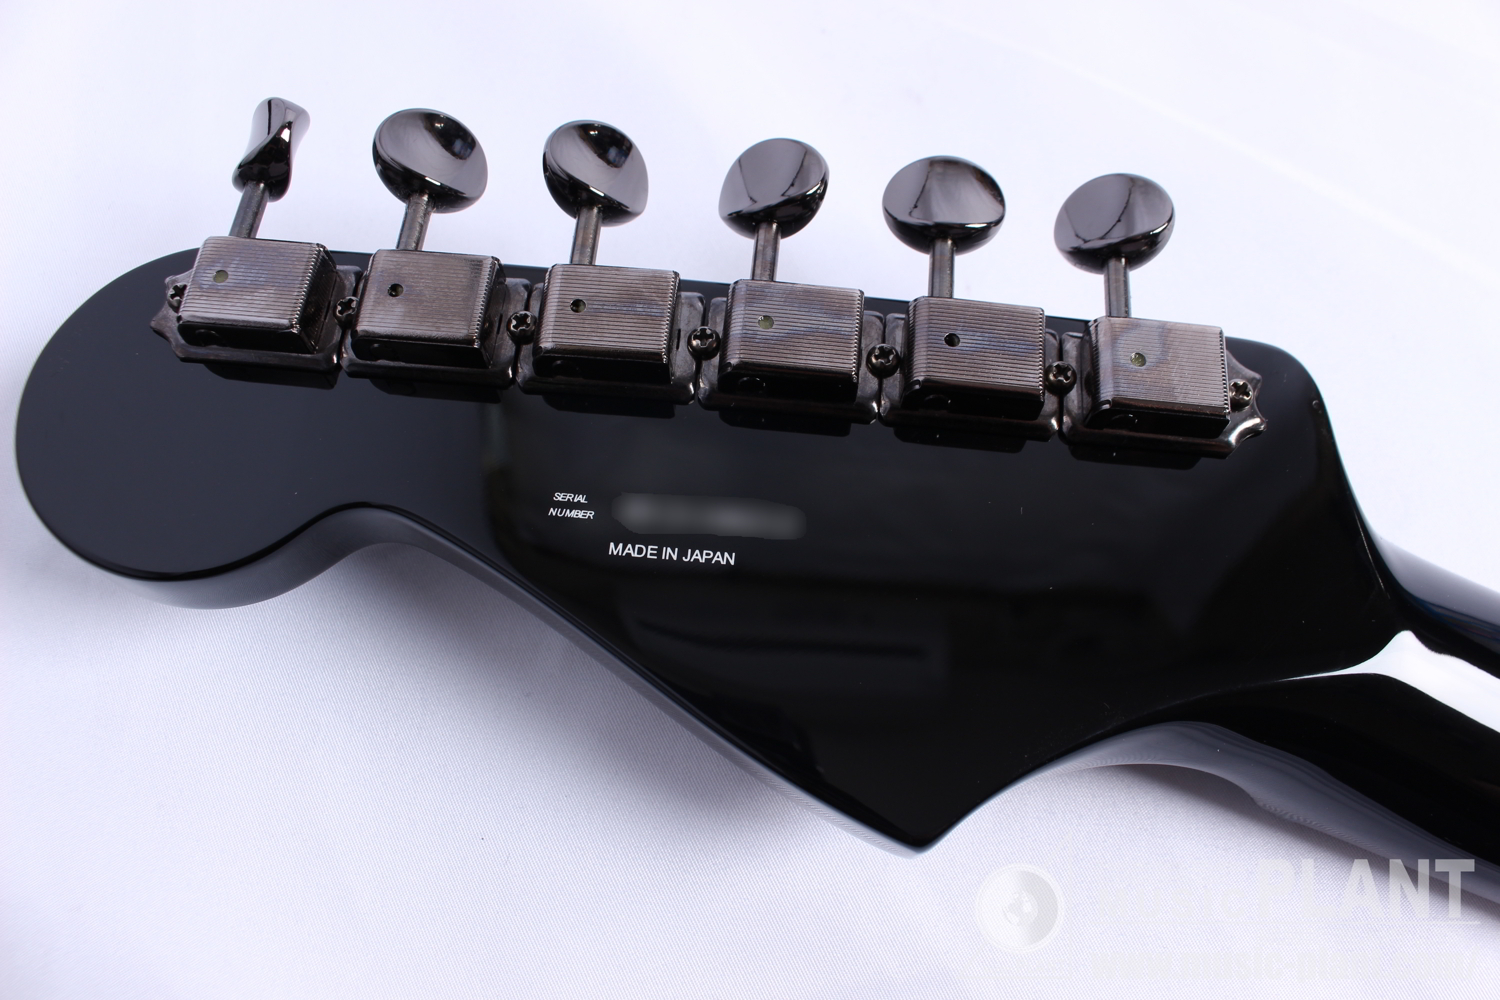 FINAL FANTASY XIV Stratocaster, Rosewood Fingerboard, Black追加画像